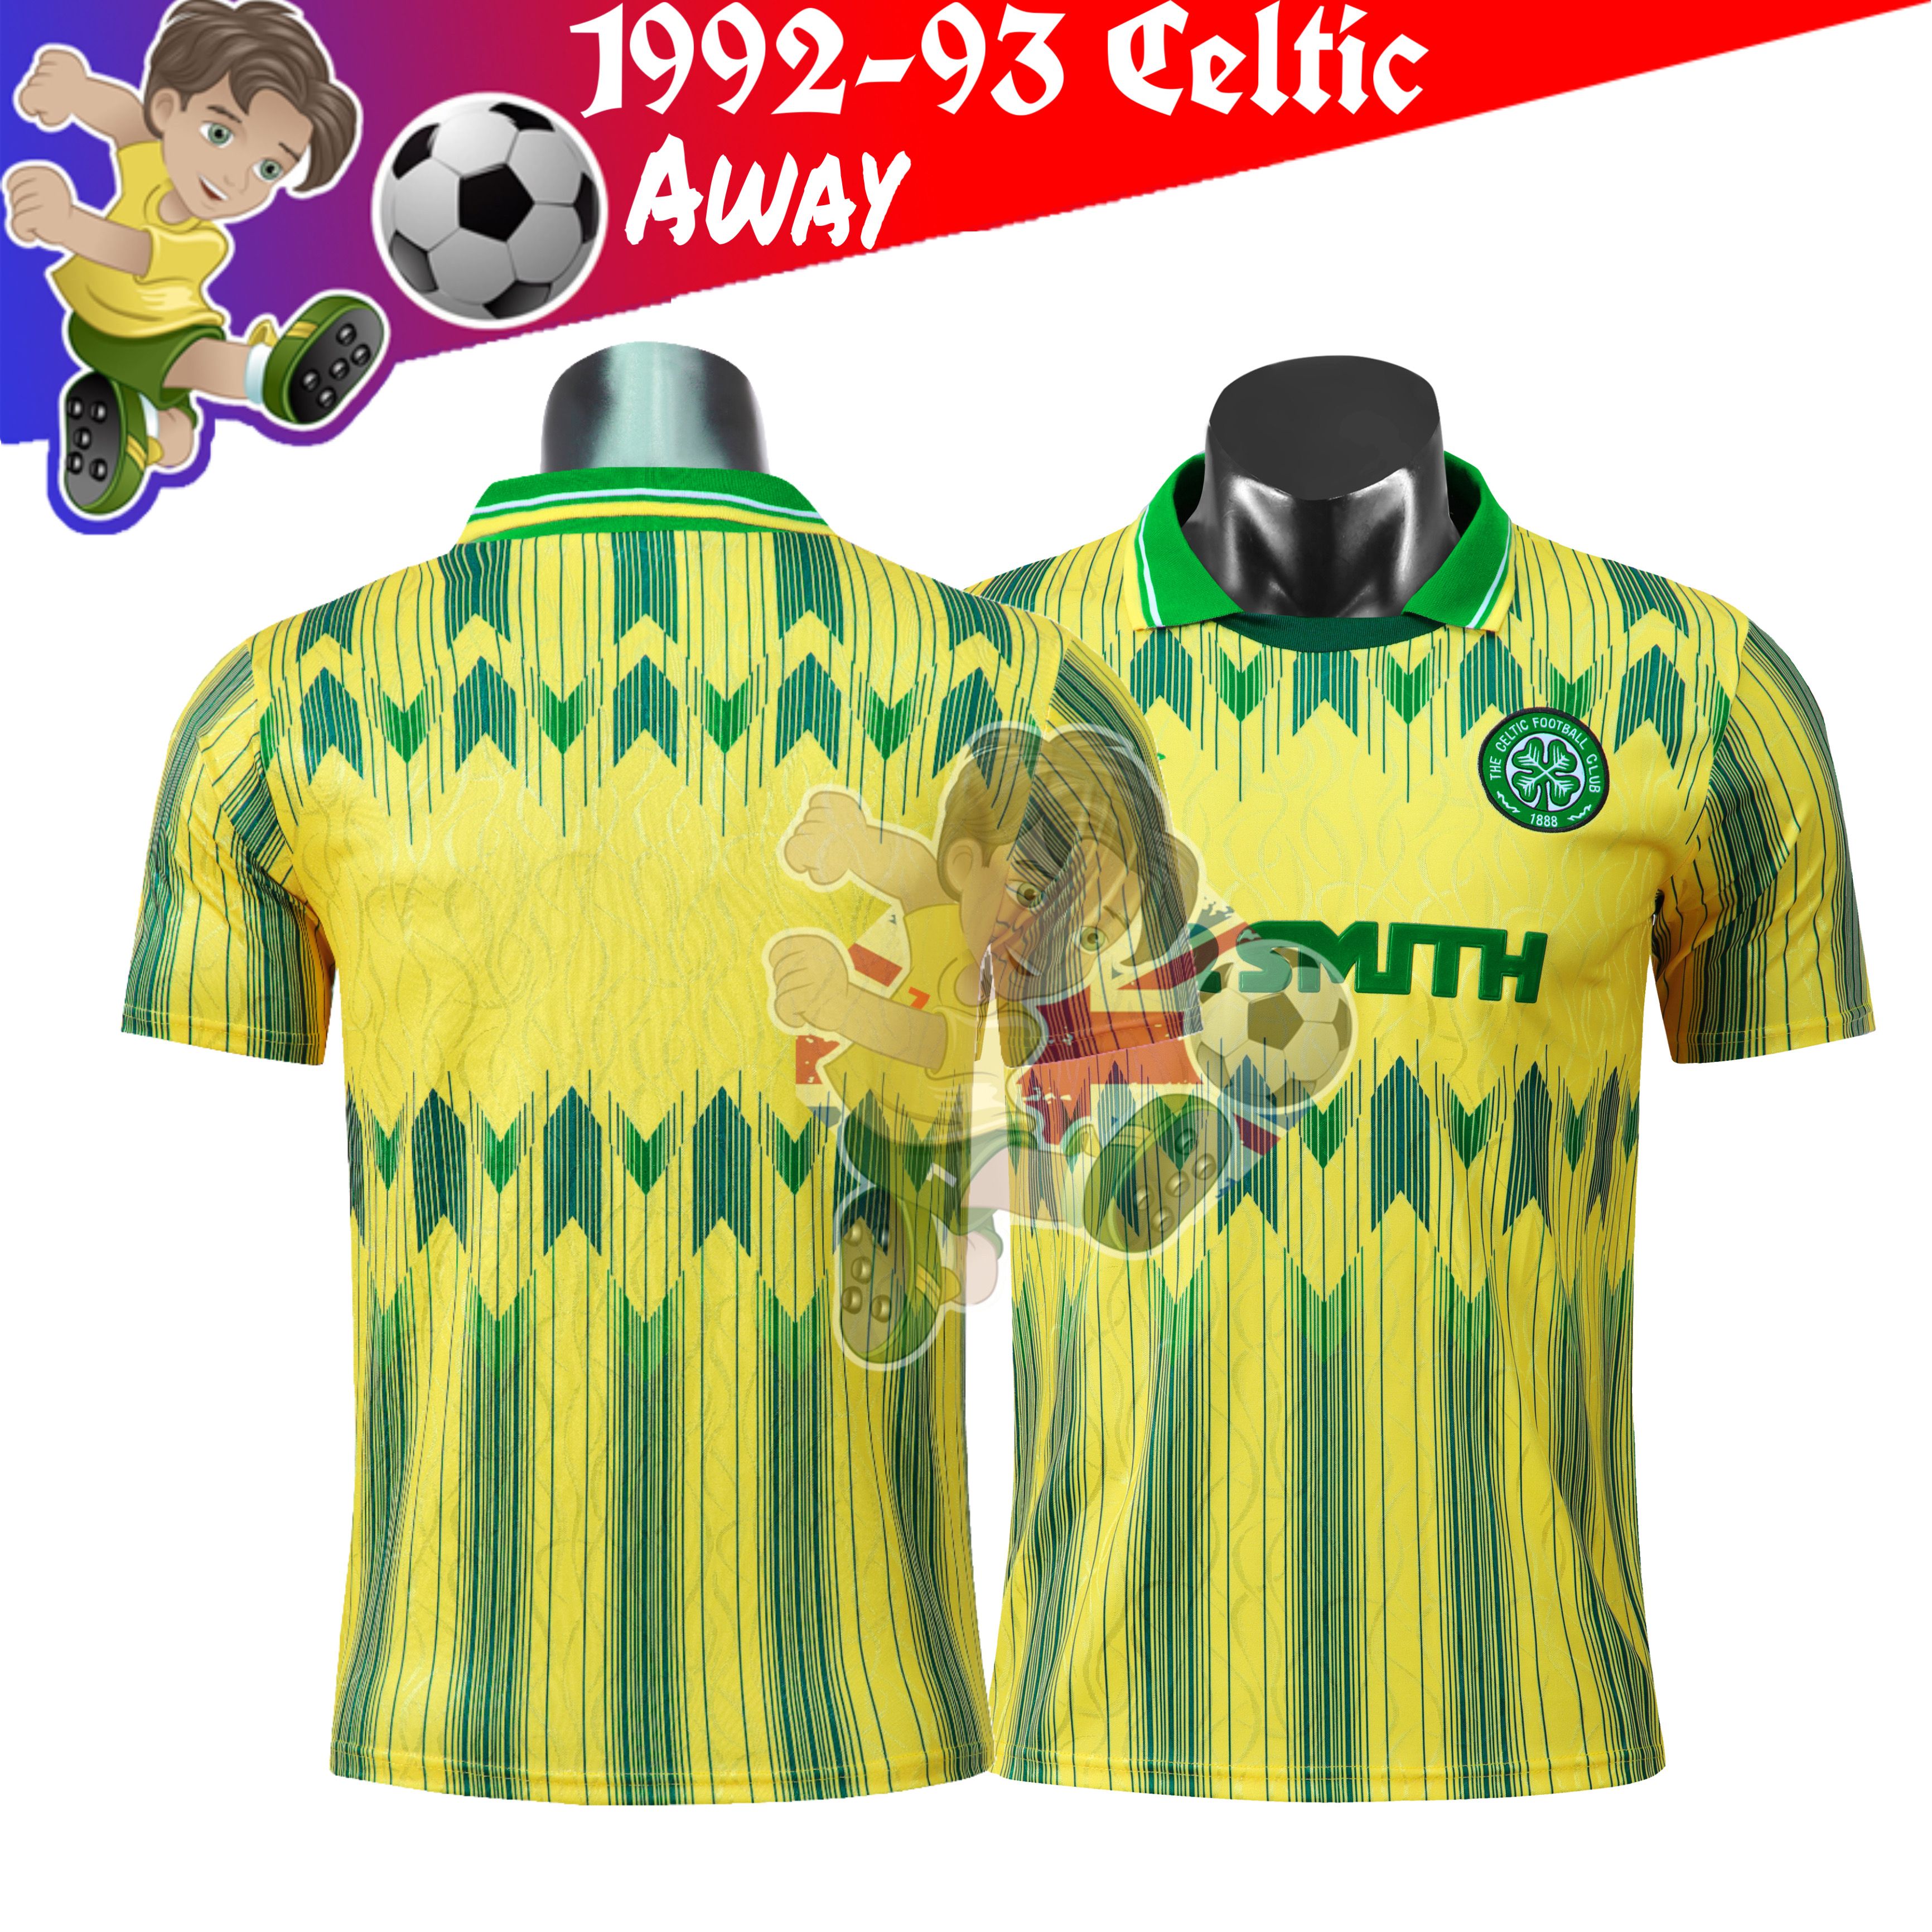 2020 1991 1992 CELTIC Retro Soccer Jerseys Camiseta Futbol ...